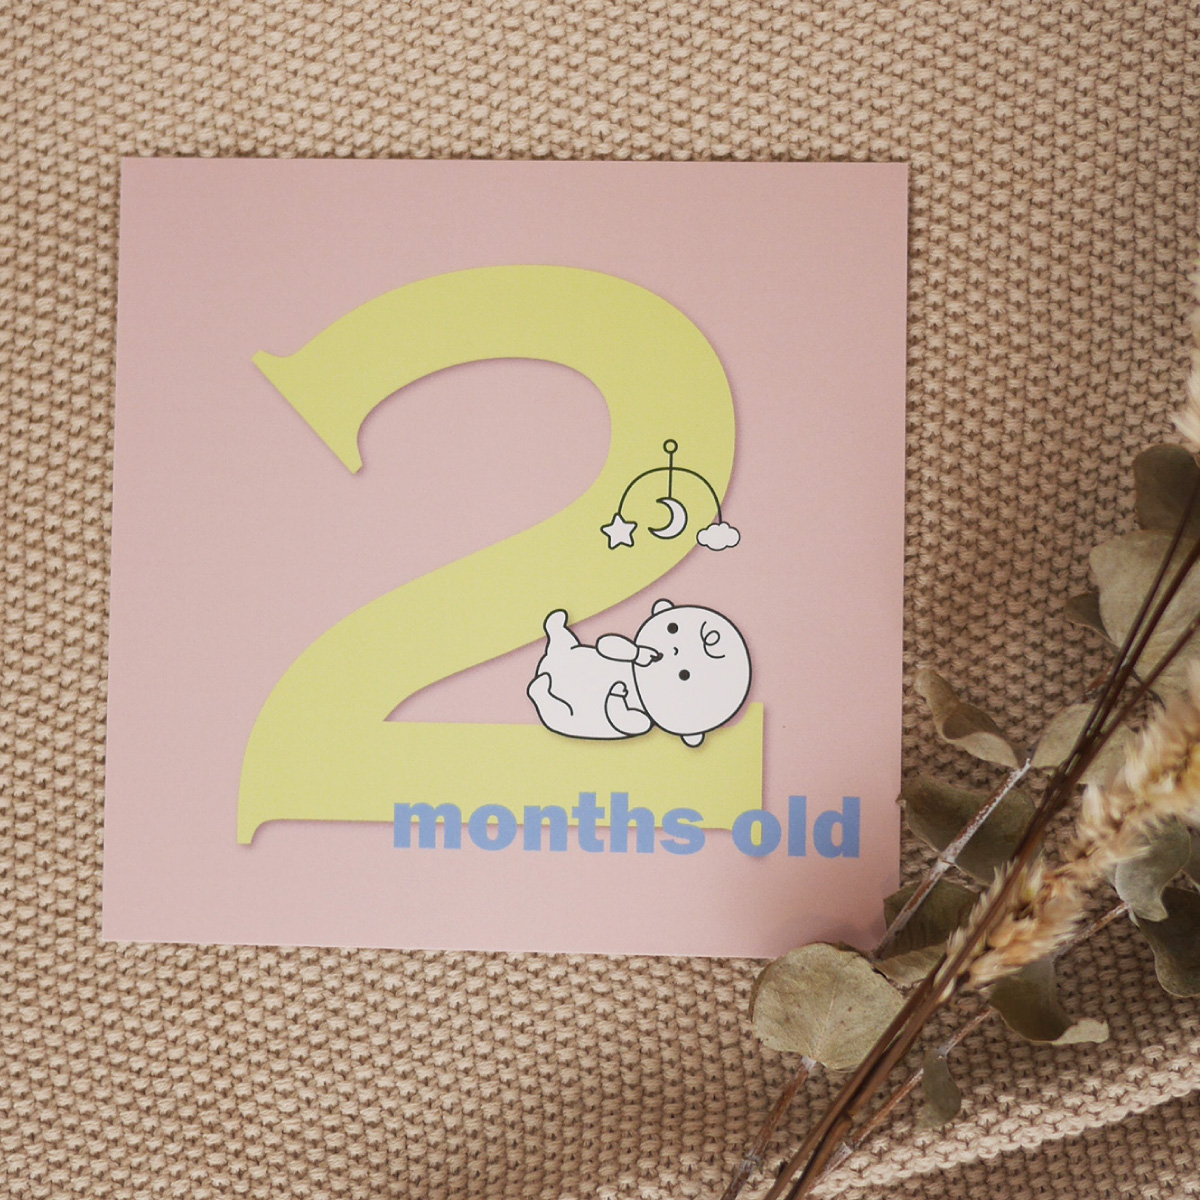  【 単品 月齢 】バースデーカードセット 誕生から1歳まで 出産準備 出産祝い 誕生日 赤ちゃん お祝い メッセージカード 男の子 女の子 おしゃれ 0歳 1歳 0ヶ月 1ヶ月 2ヶ月 3ヶ月 4ヶ月 5ヶ月 6ヶ月 7ヶ月 8ヶ月 9ヶ月 10ヶ月 11ヶ月 12ヶ月